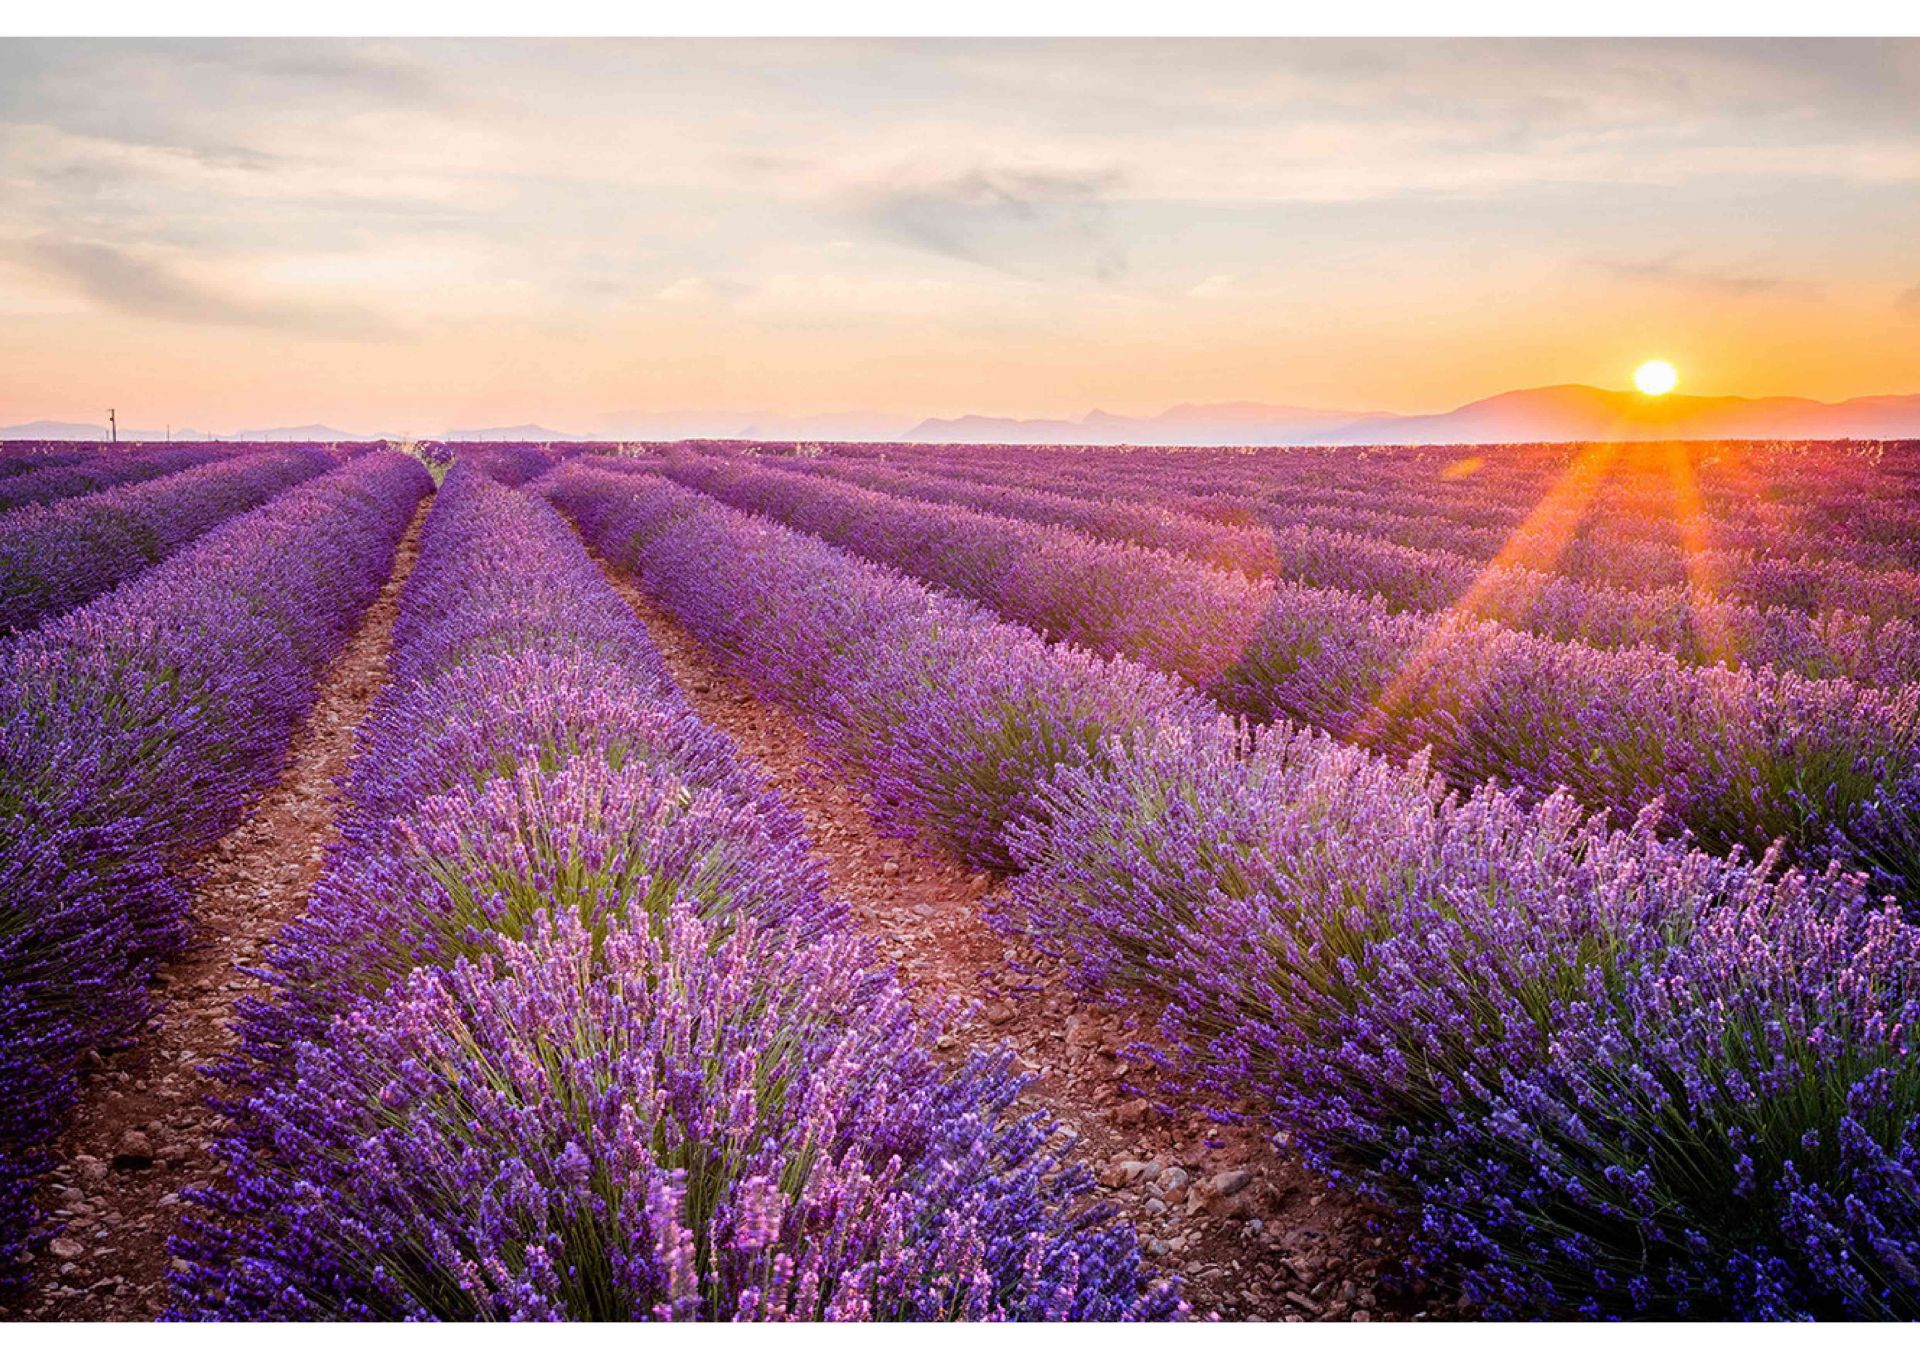 Lavender được biết đến cách đây hàng nghìn năm từ thời
Hy Lạp cổ, có xuất xứ từ vùng Địa Trung Hải. Với màu
tím lãng mạn và những công dụng tuyệt vời, hoa Lavender
được người La Mã gieo trồng khắp các nơi ở Châu u.
Ngày nay hoa Lavender có mặt ở hầu hết các quốc gia trên
thế giới. Nhưng nổi tiếng nhất là những cánh đồng oải
hương bất tận ở Pháp và Anh.